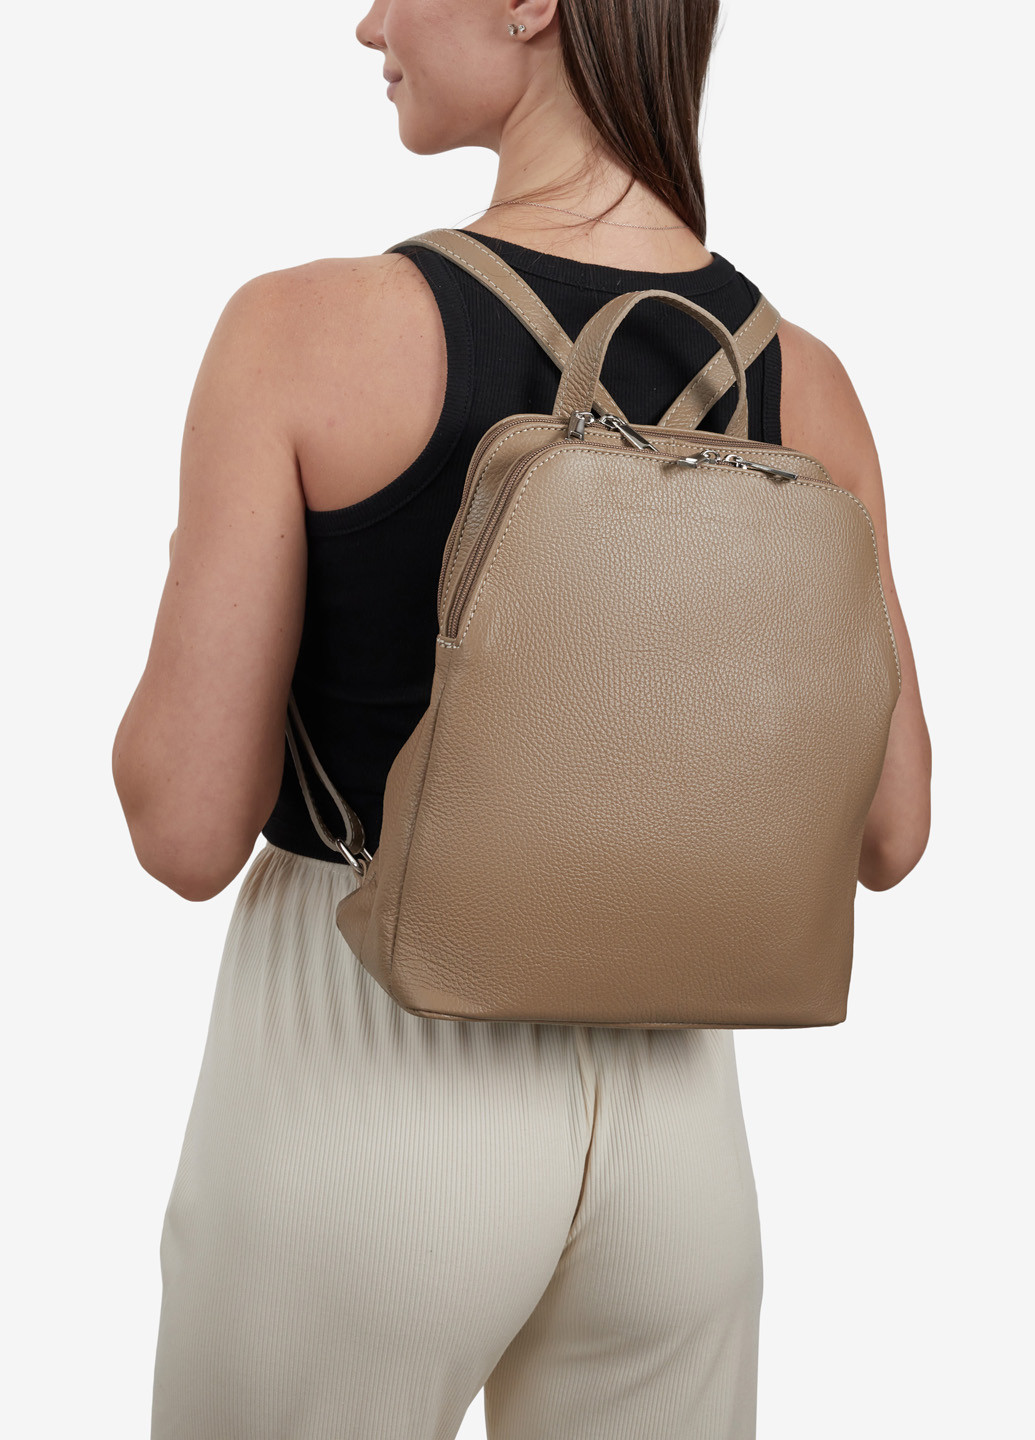 Рюкзак женский кожаный Backpack Regina Notte (253779275)